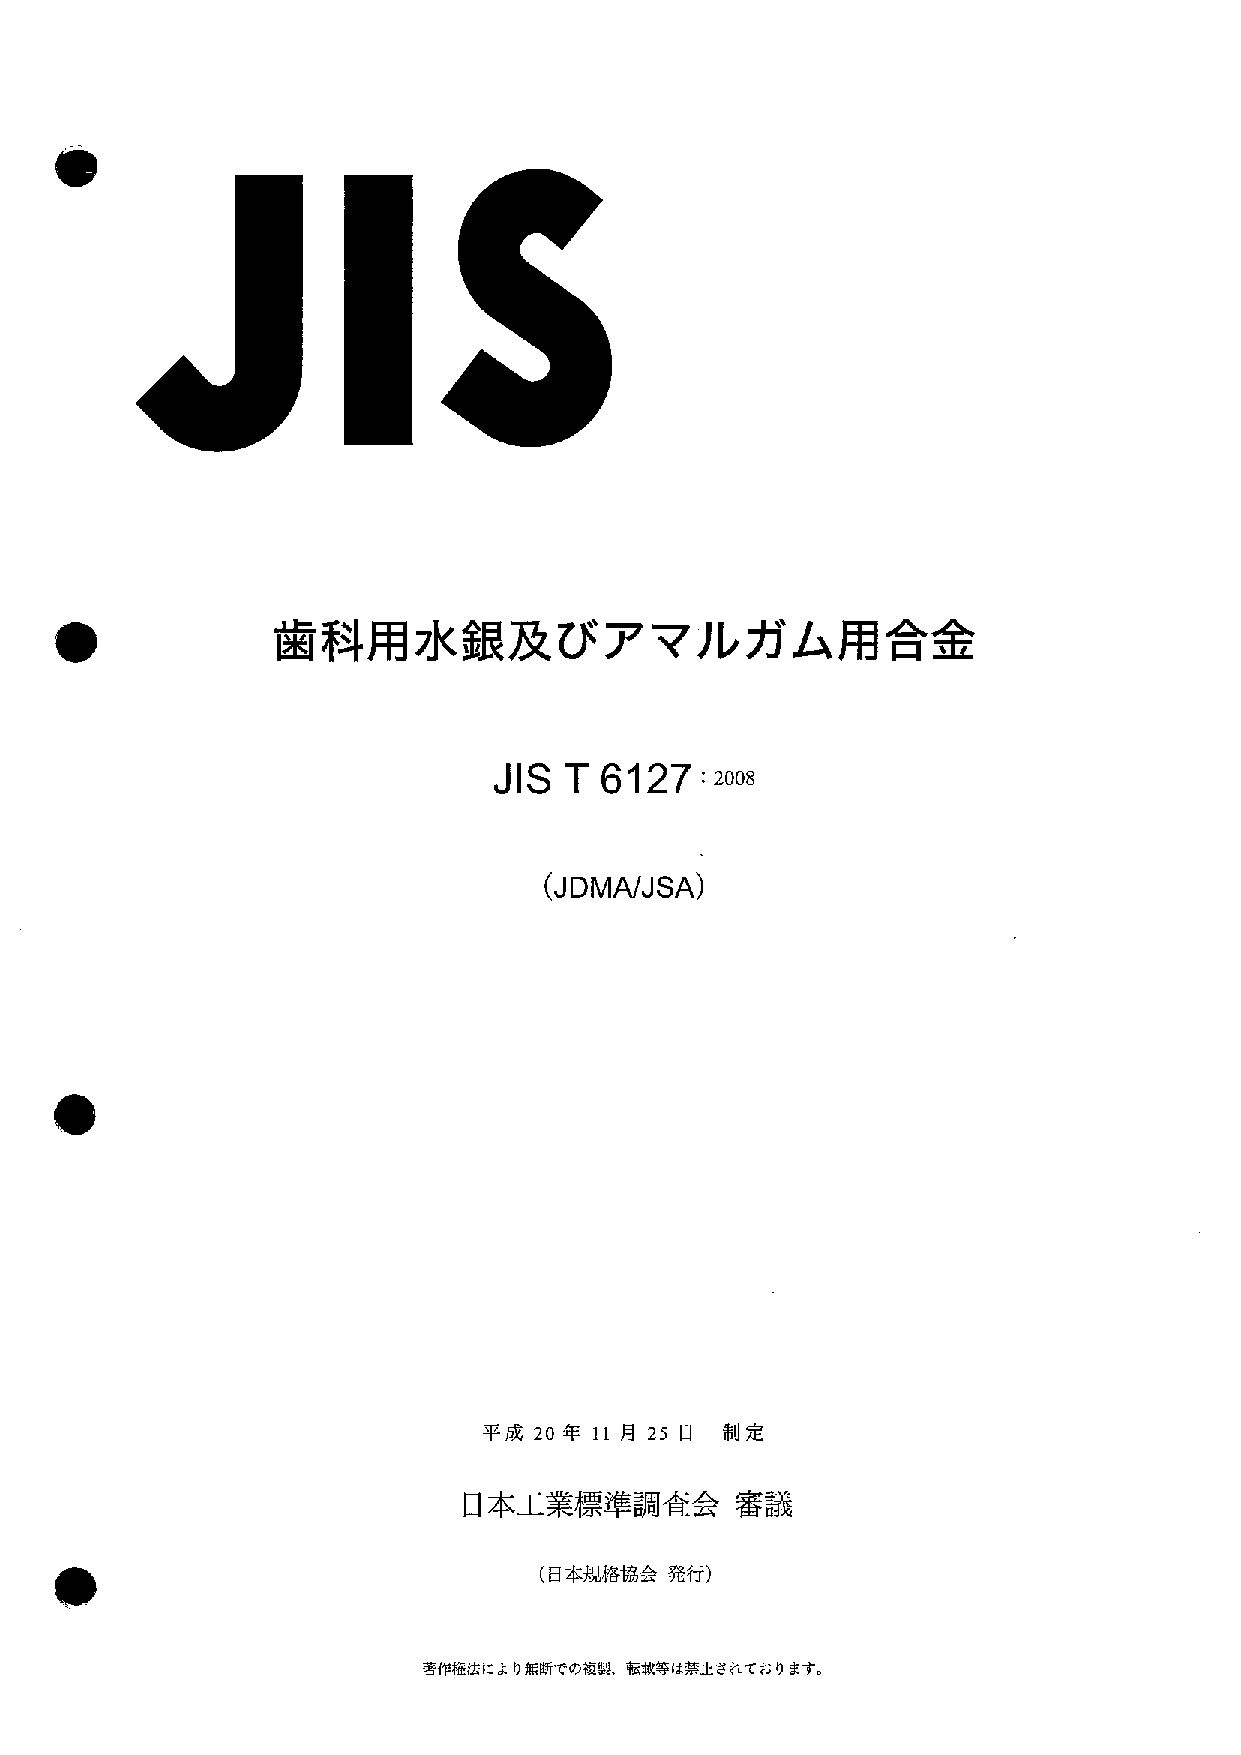 JIS T 6127:2008